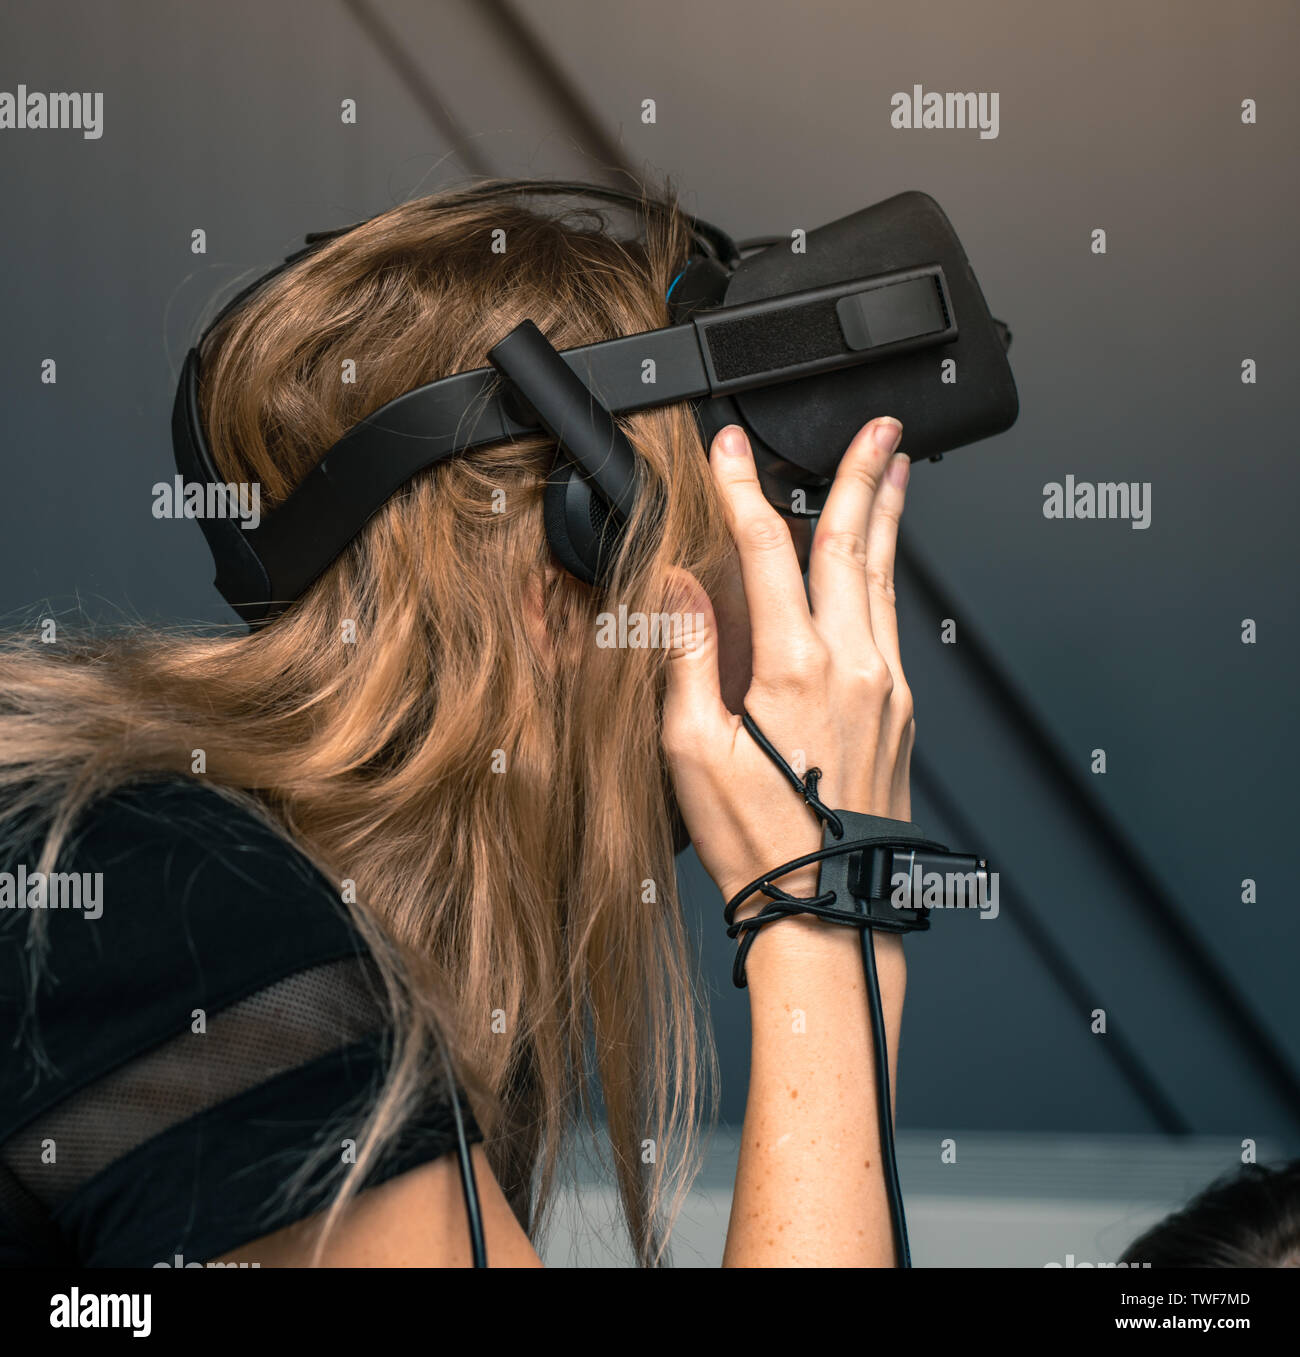 Virtuelle Realität mit full immersion. Das Mädchen ist das Tragen von  VR-Brille auf dem Kopf, sie hat eine Videokamera und einen Bewegungssensor  auf Ihre Hand Stockfotografie - Alamy